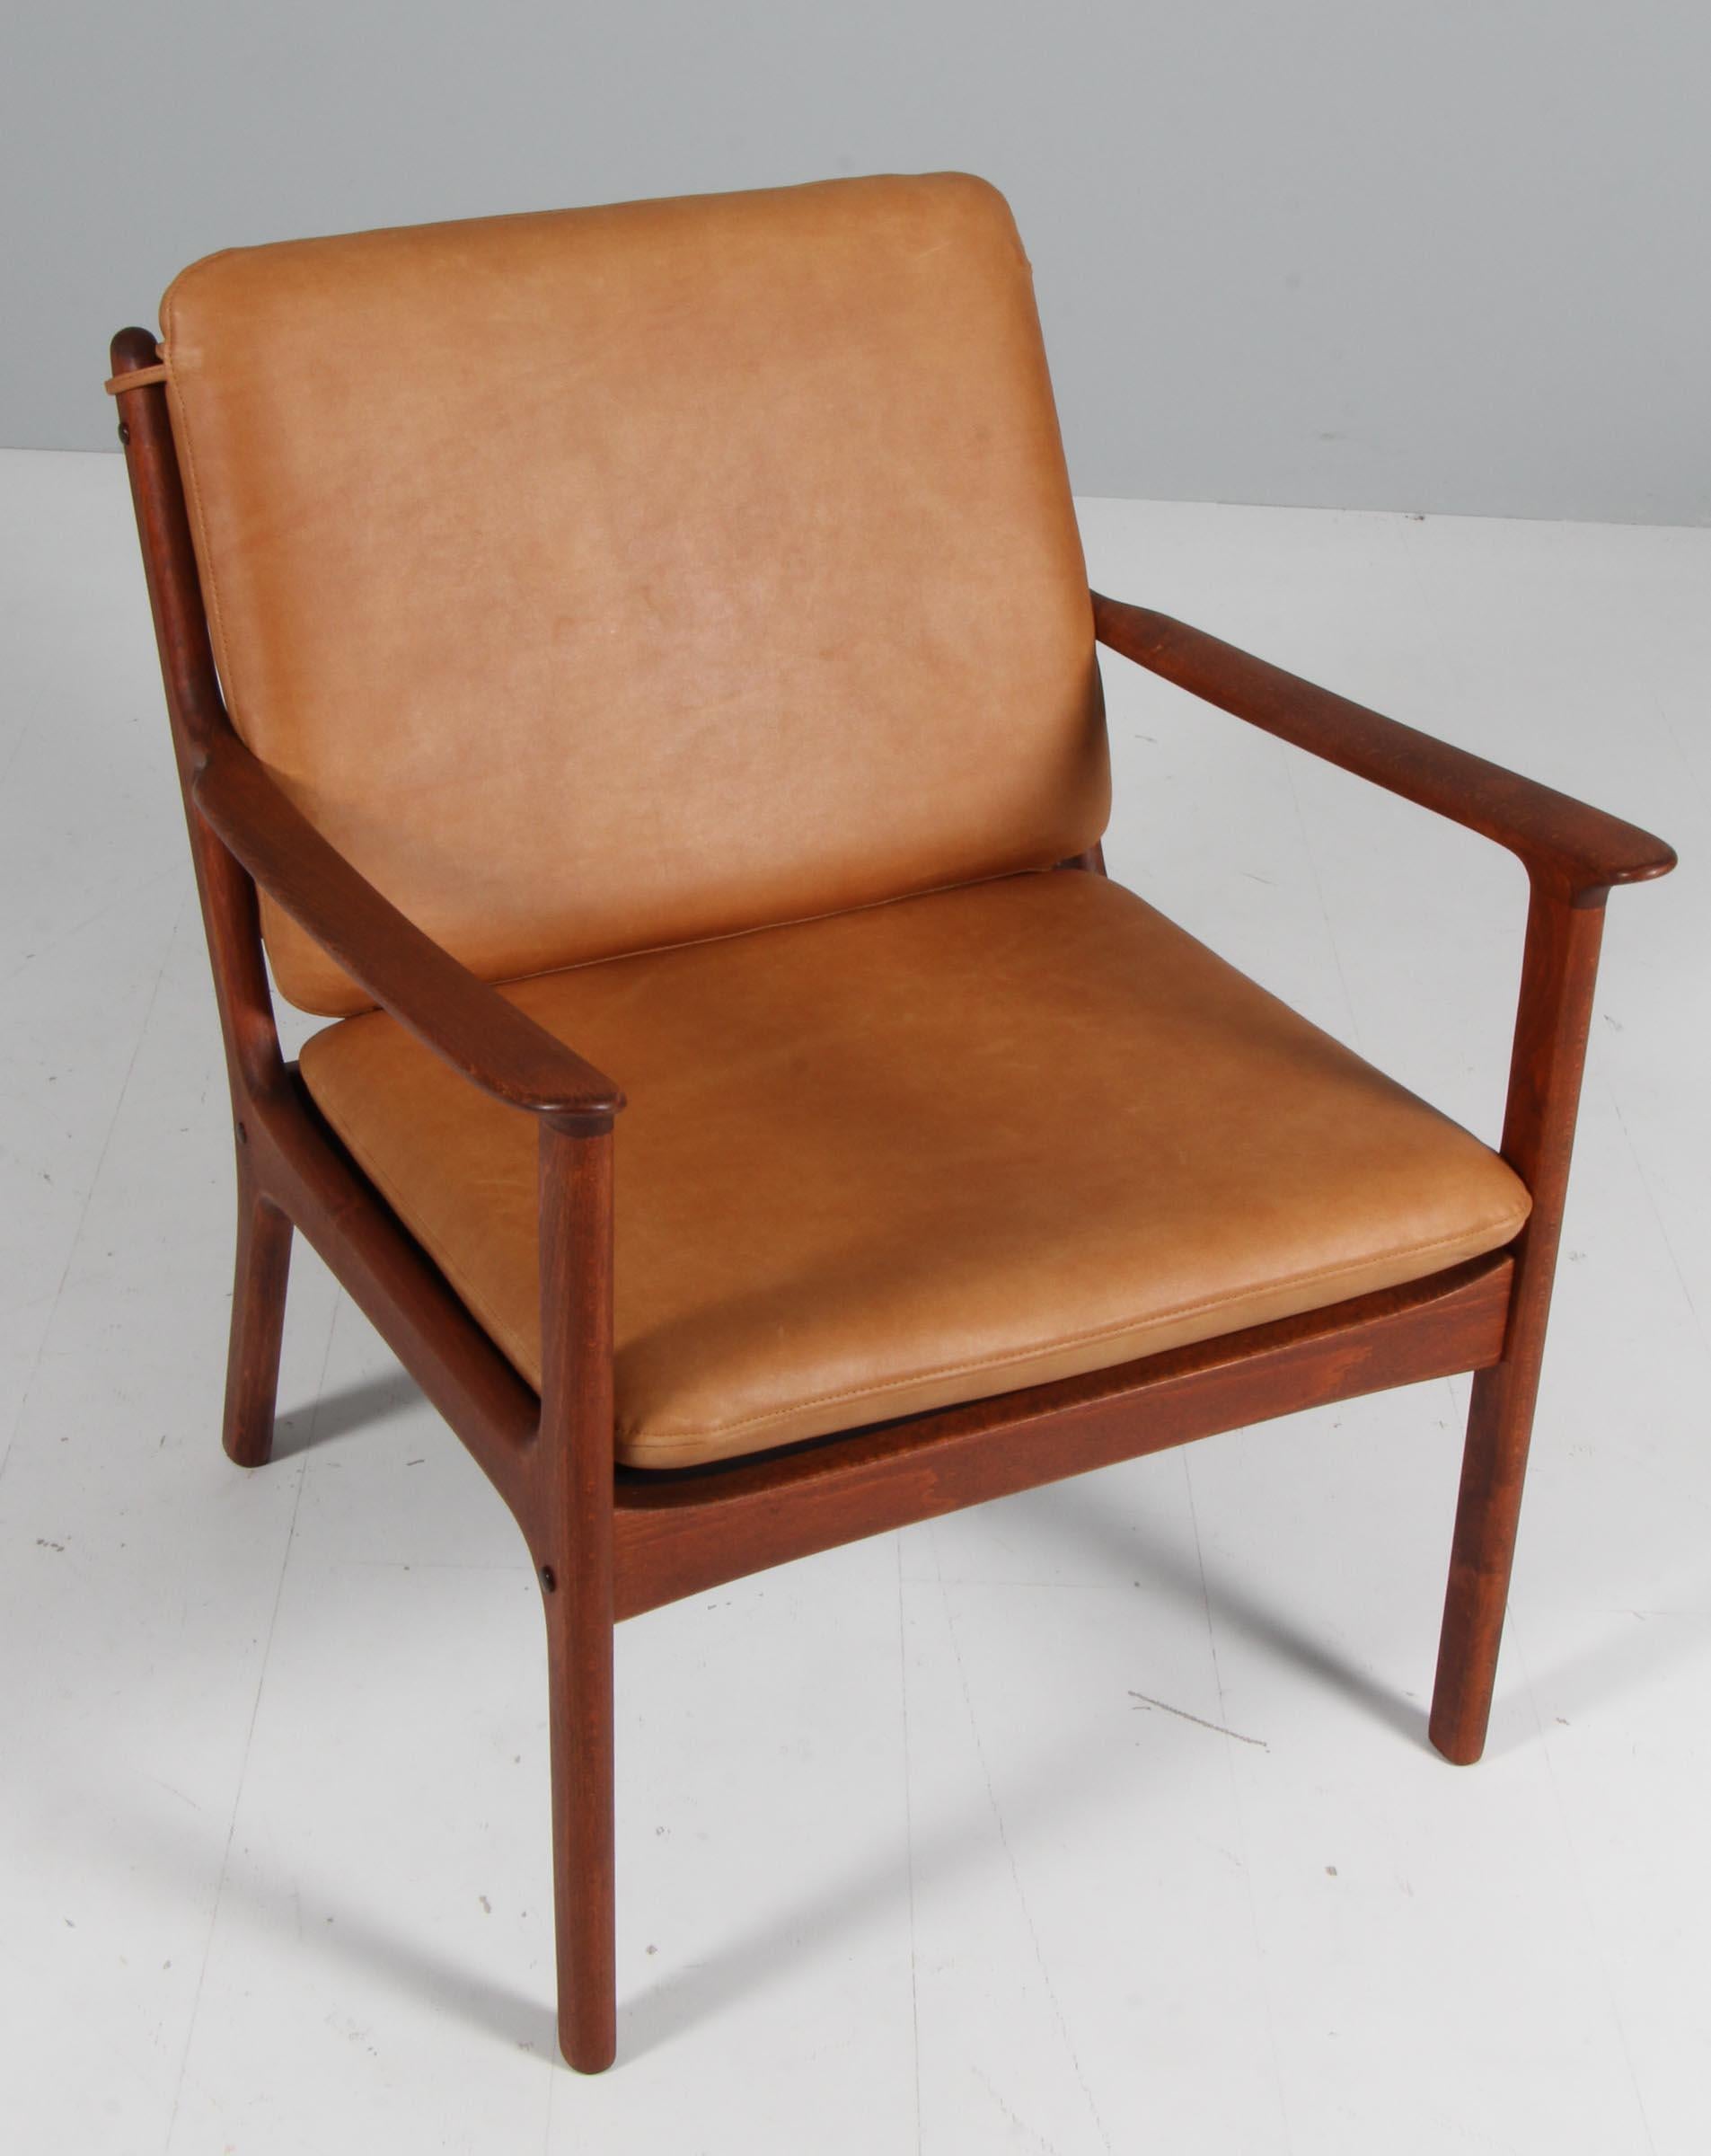 Chaise de salon Ole Wanscher nouvellement recouverte de cuir aniline cognac vintage. 

Fabriqué en hêtre massif teinté.

Modèle PJ 112, fabriqué par Poul Jeppesen.

